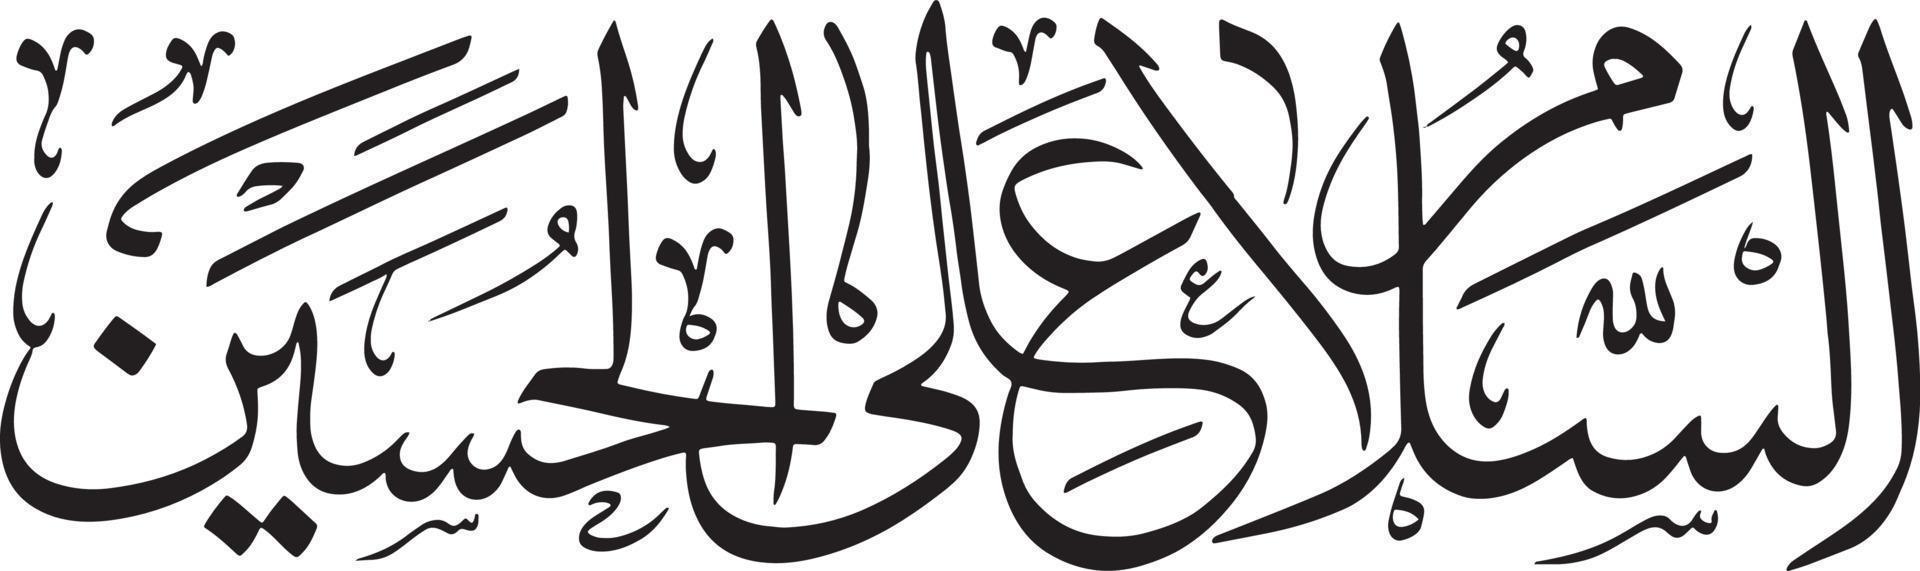 aslam alalhussain titolo islamico urdu Arabo calligrafia gratuito vettore